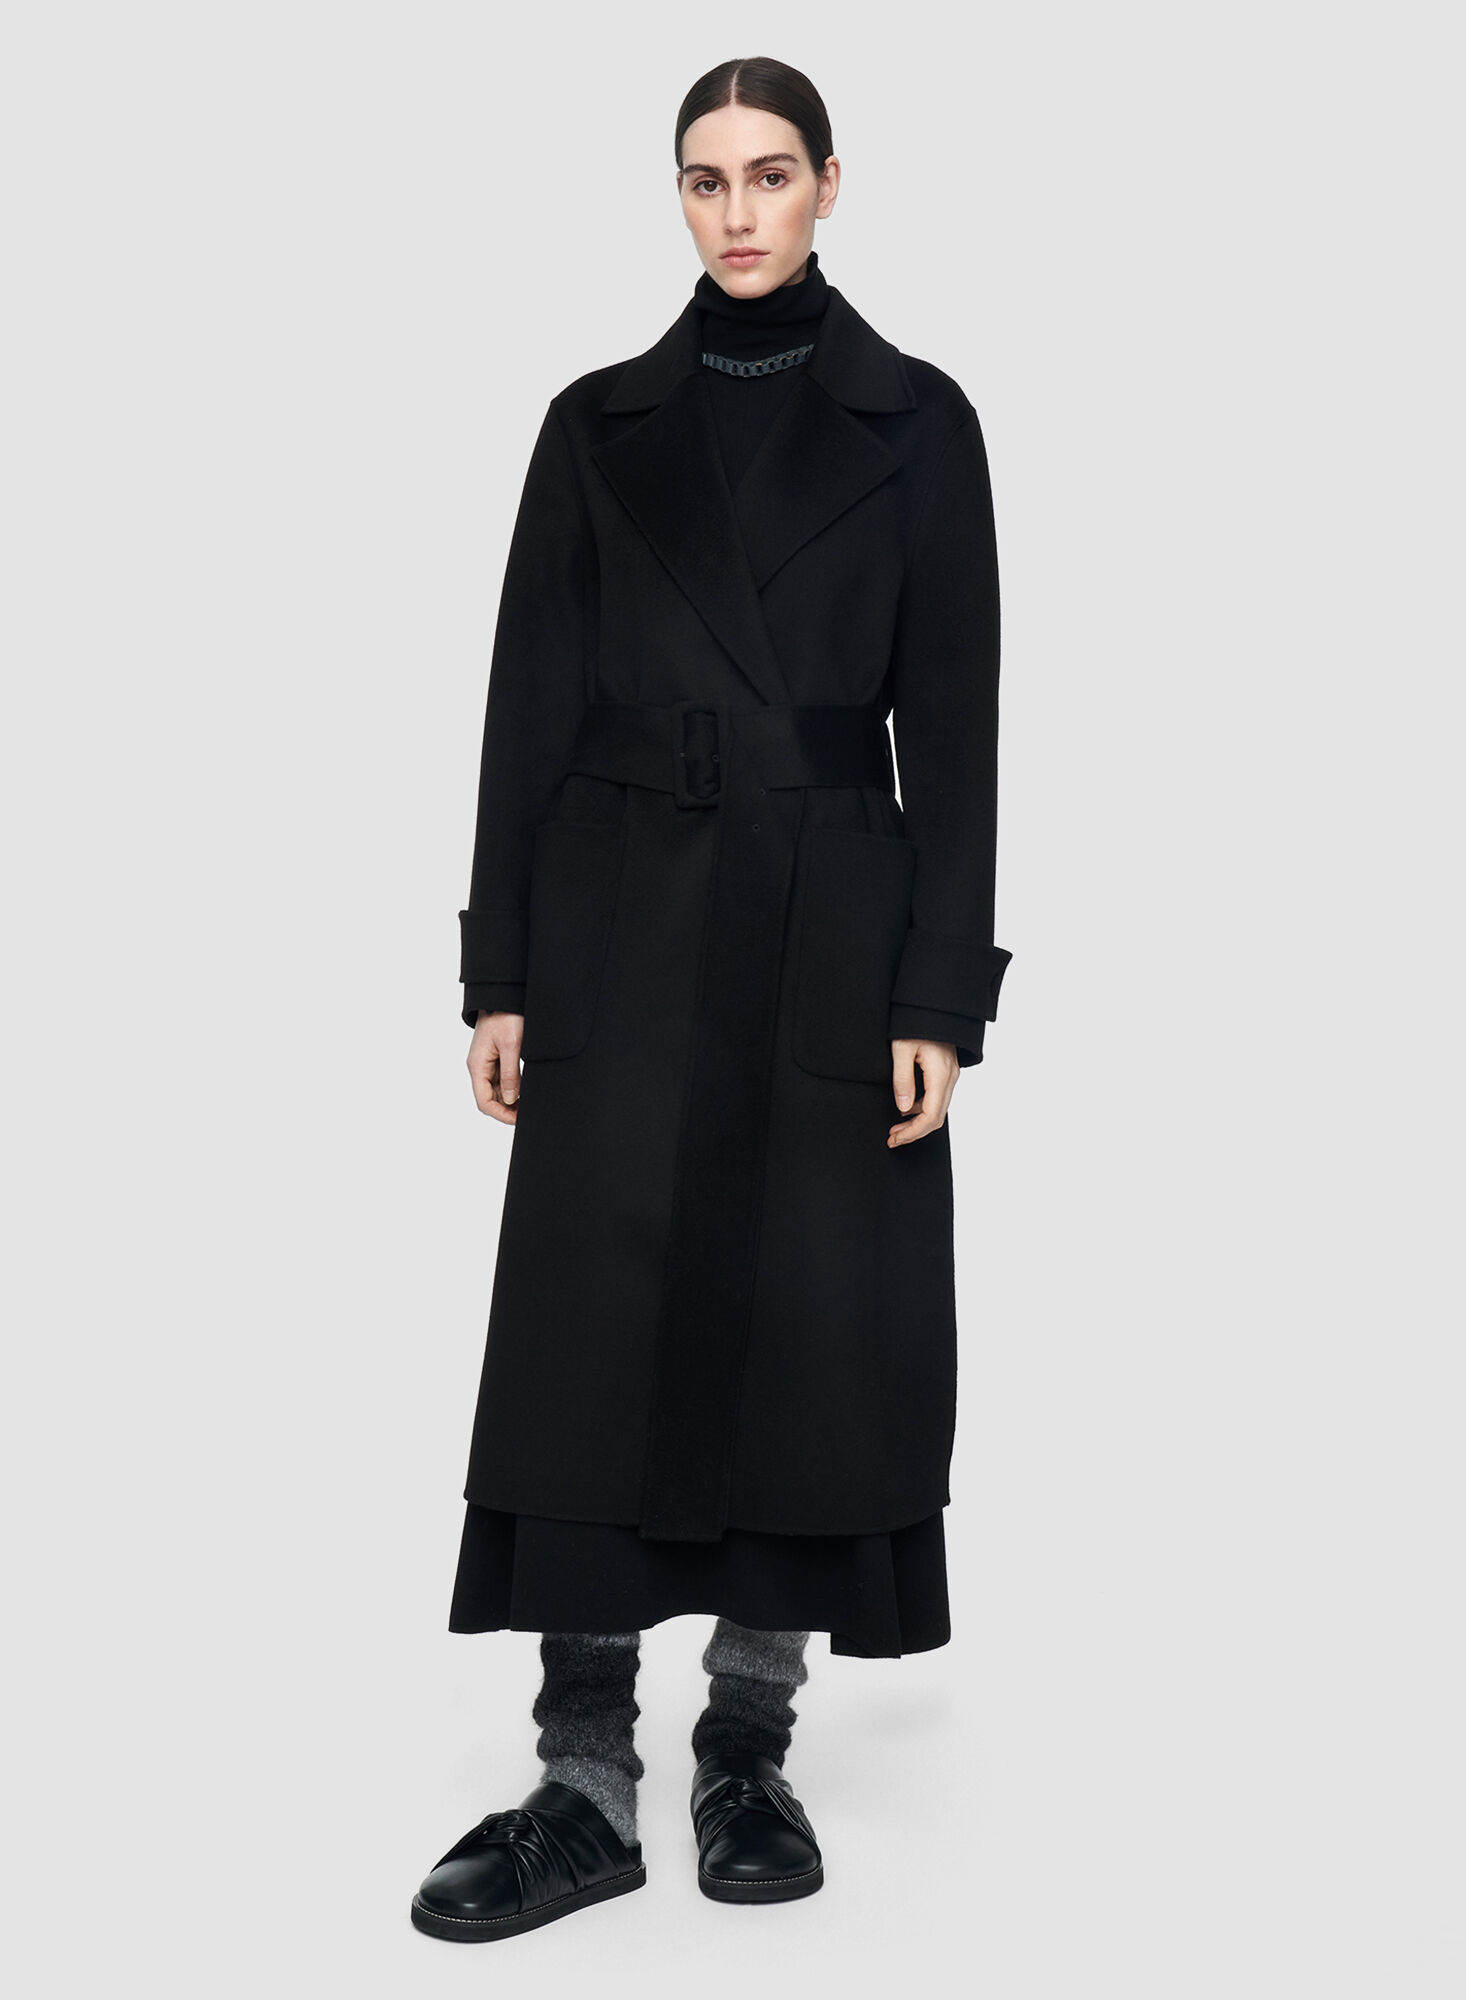 【極美品】cashmere black coat